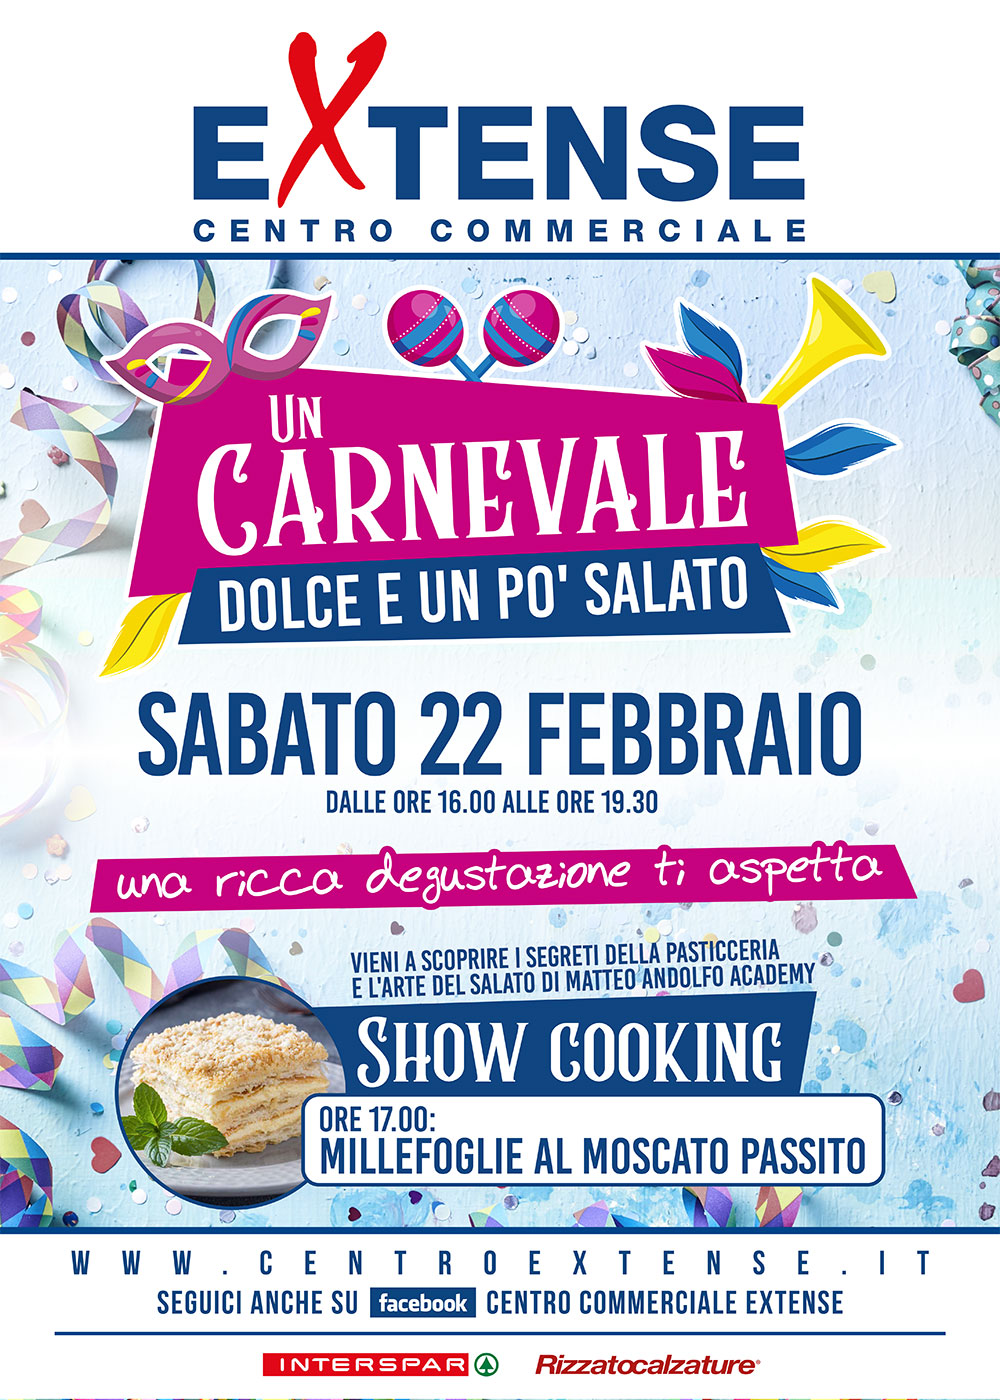 Carnevale 2020 - Centro Commerciale Extense - Sabato 22 febbraio 2020 – dalle 16.00 alle 19.30